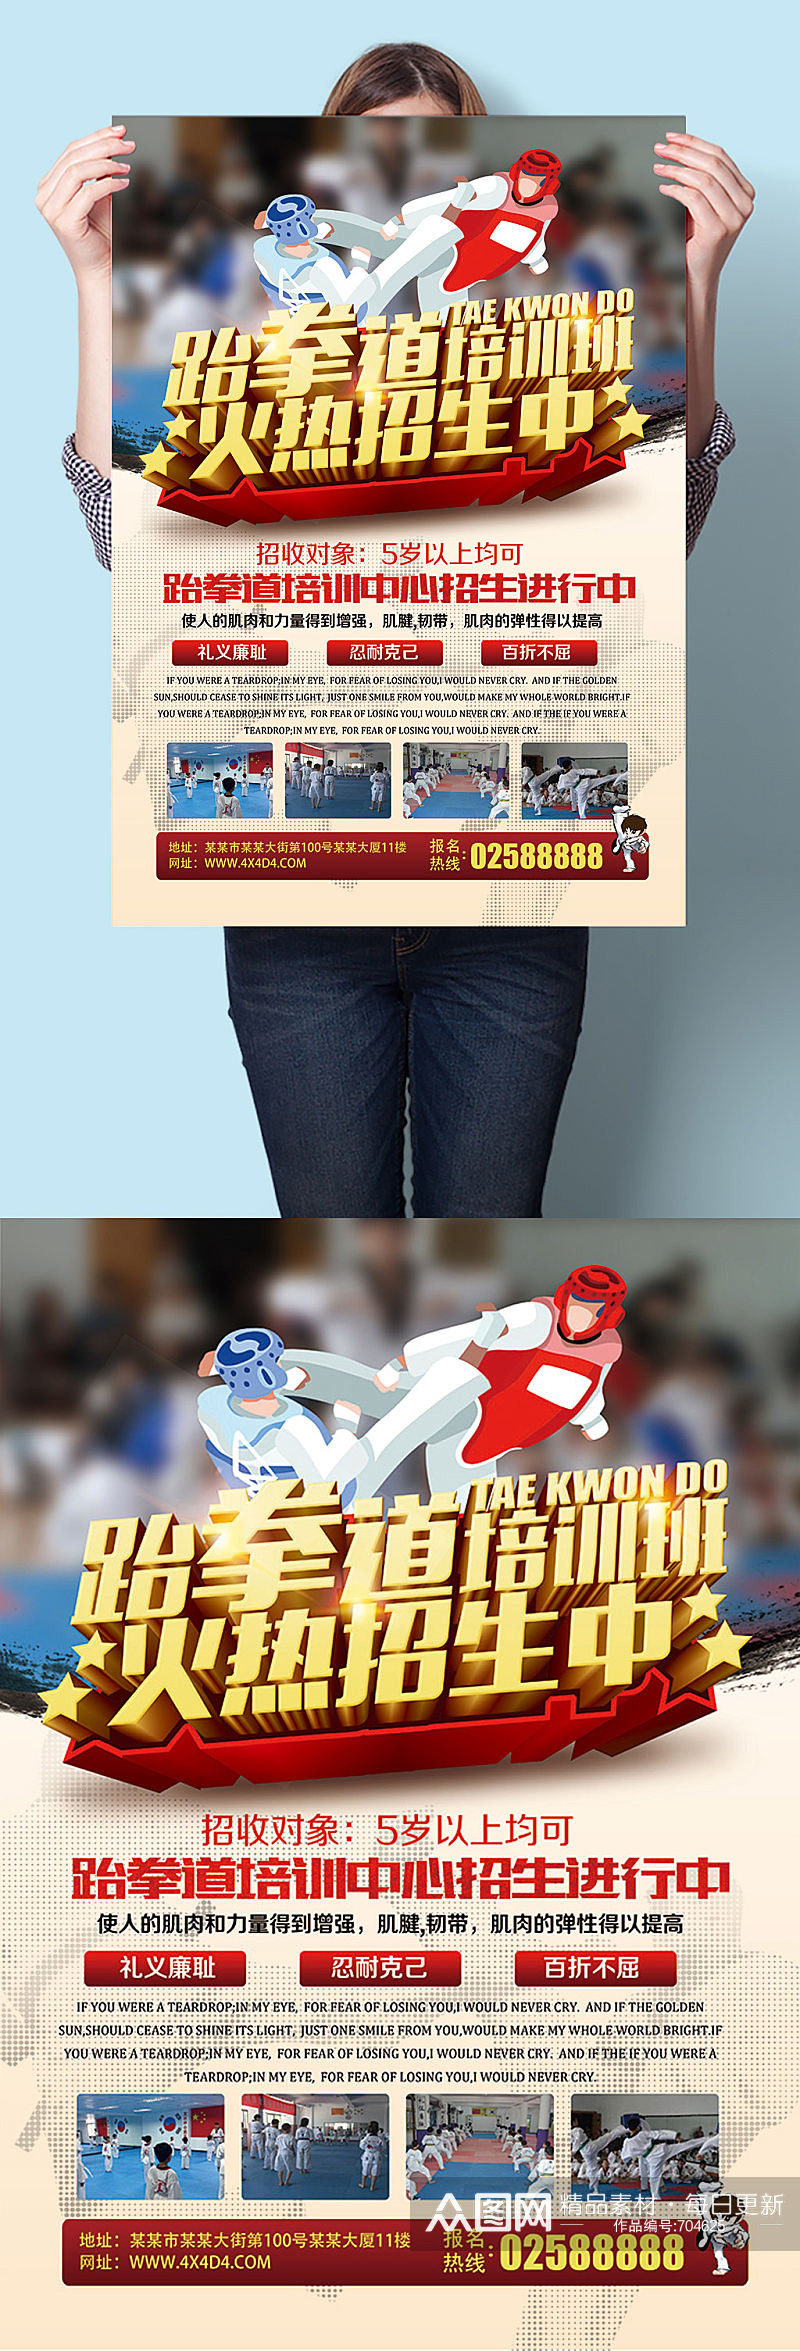 跆拳道培训班报名招生广告宣传海报素材